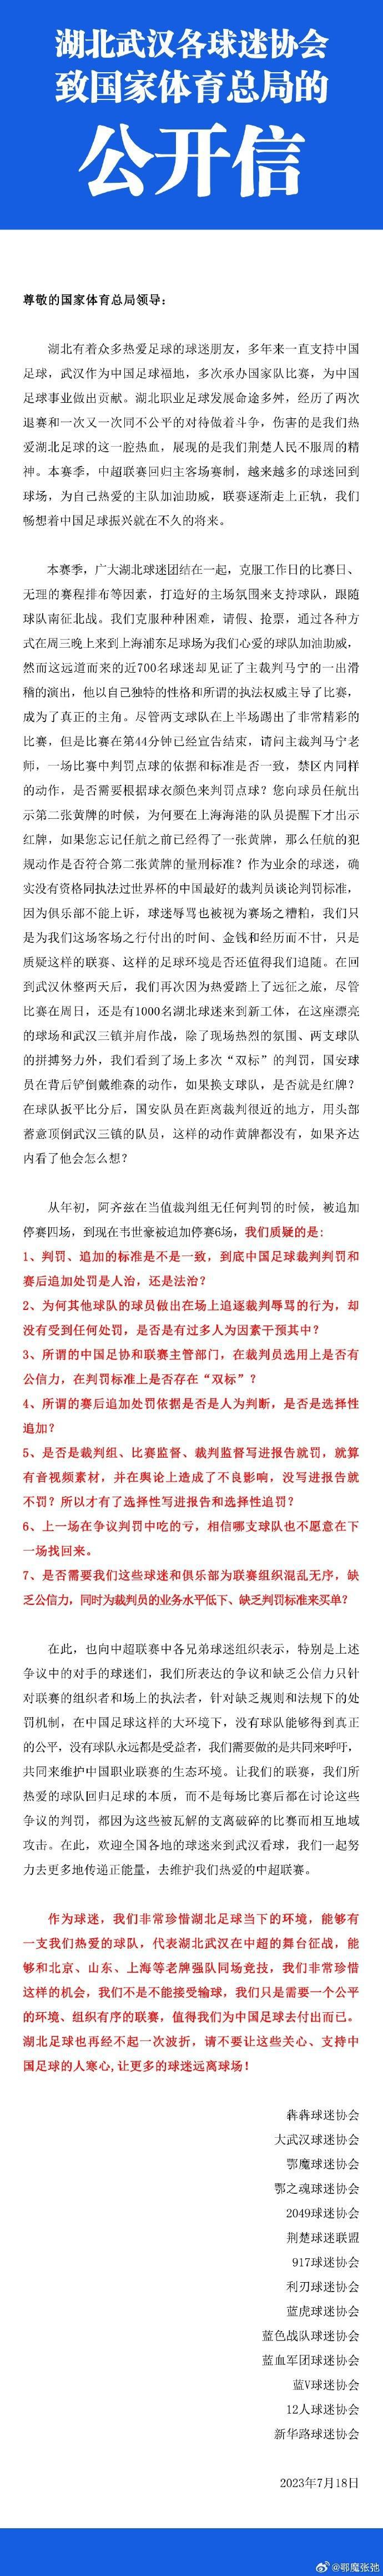 谢晖在微博上吐槽裁判；

南通支云老板范兵炮轰足协为小丑；

山东球迷协会、武汉(1)